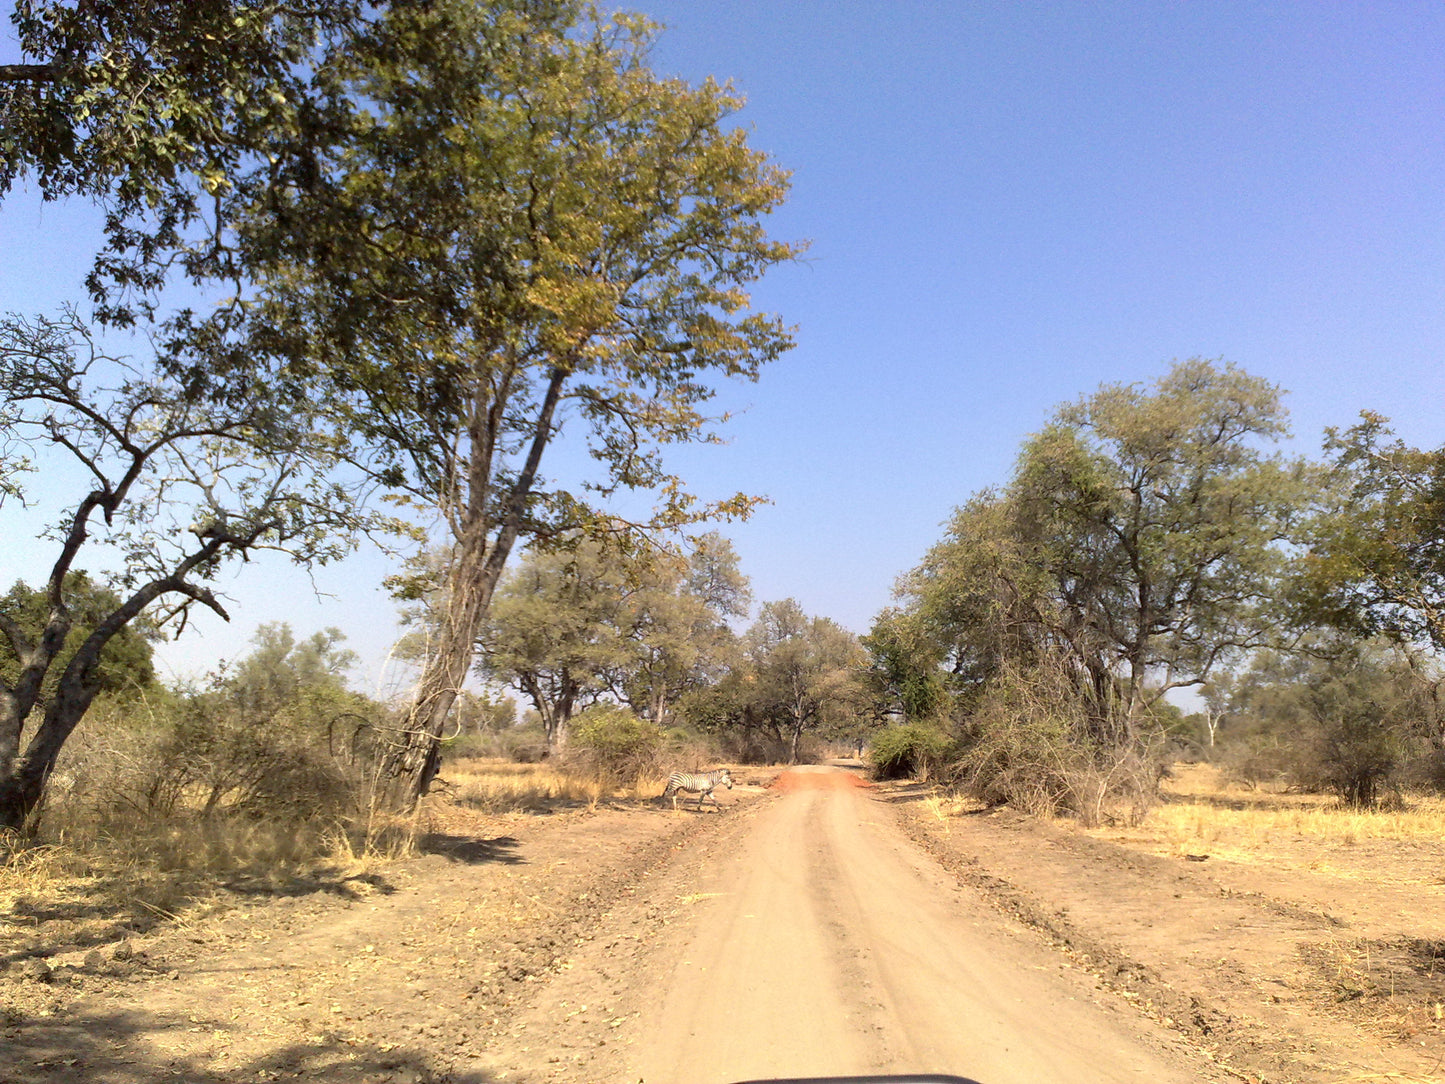 ZAMBIA " NATURA INCONTAMINATA" 20 GIORNI SELF DRIVE